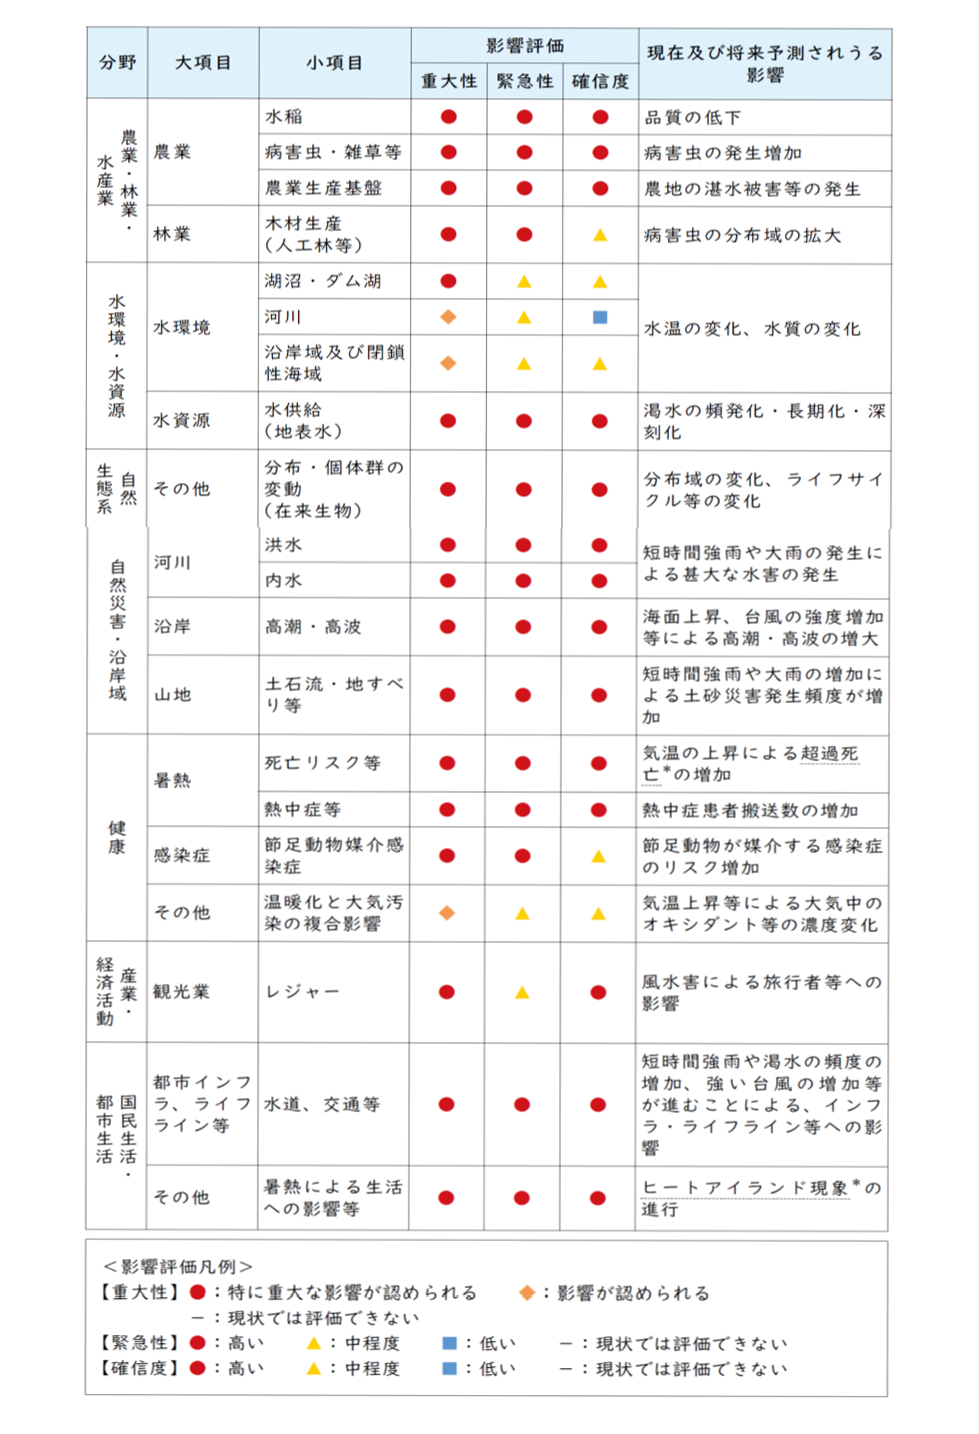 34　仙台市域に関わり得る気候変動影響と影響評価の概要 